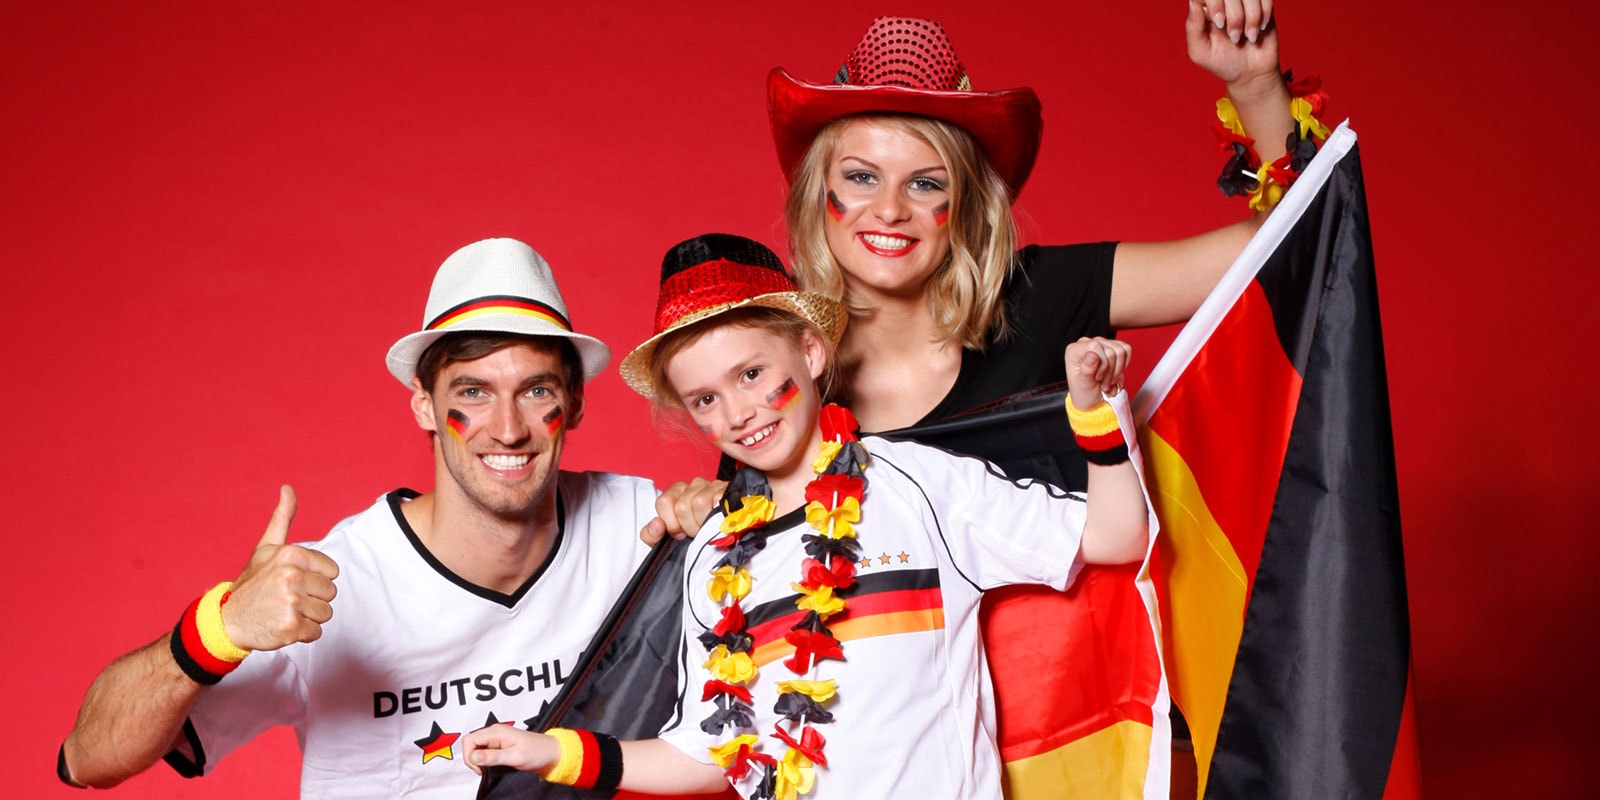 Deutschland Kostüme und Fanartikel für Gruppen